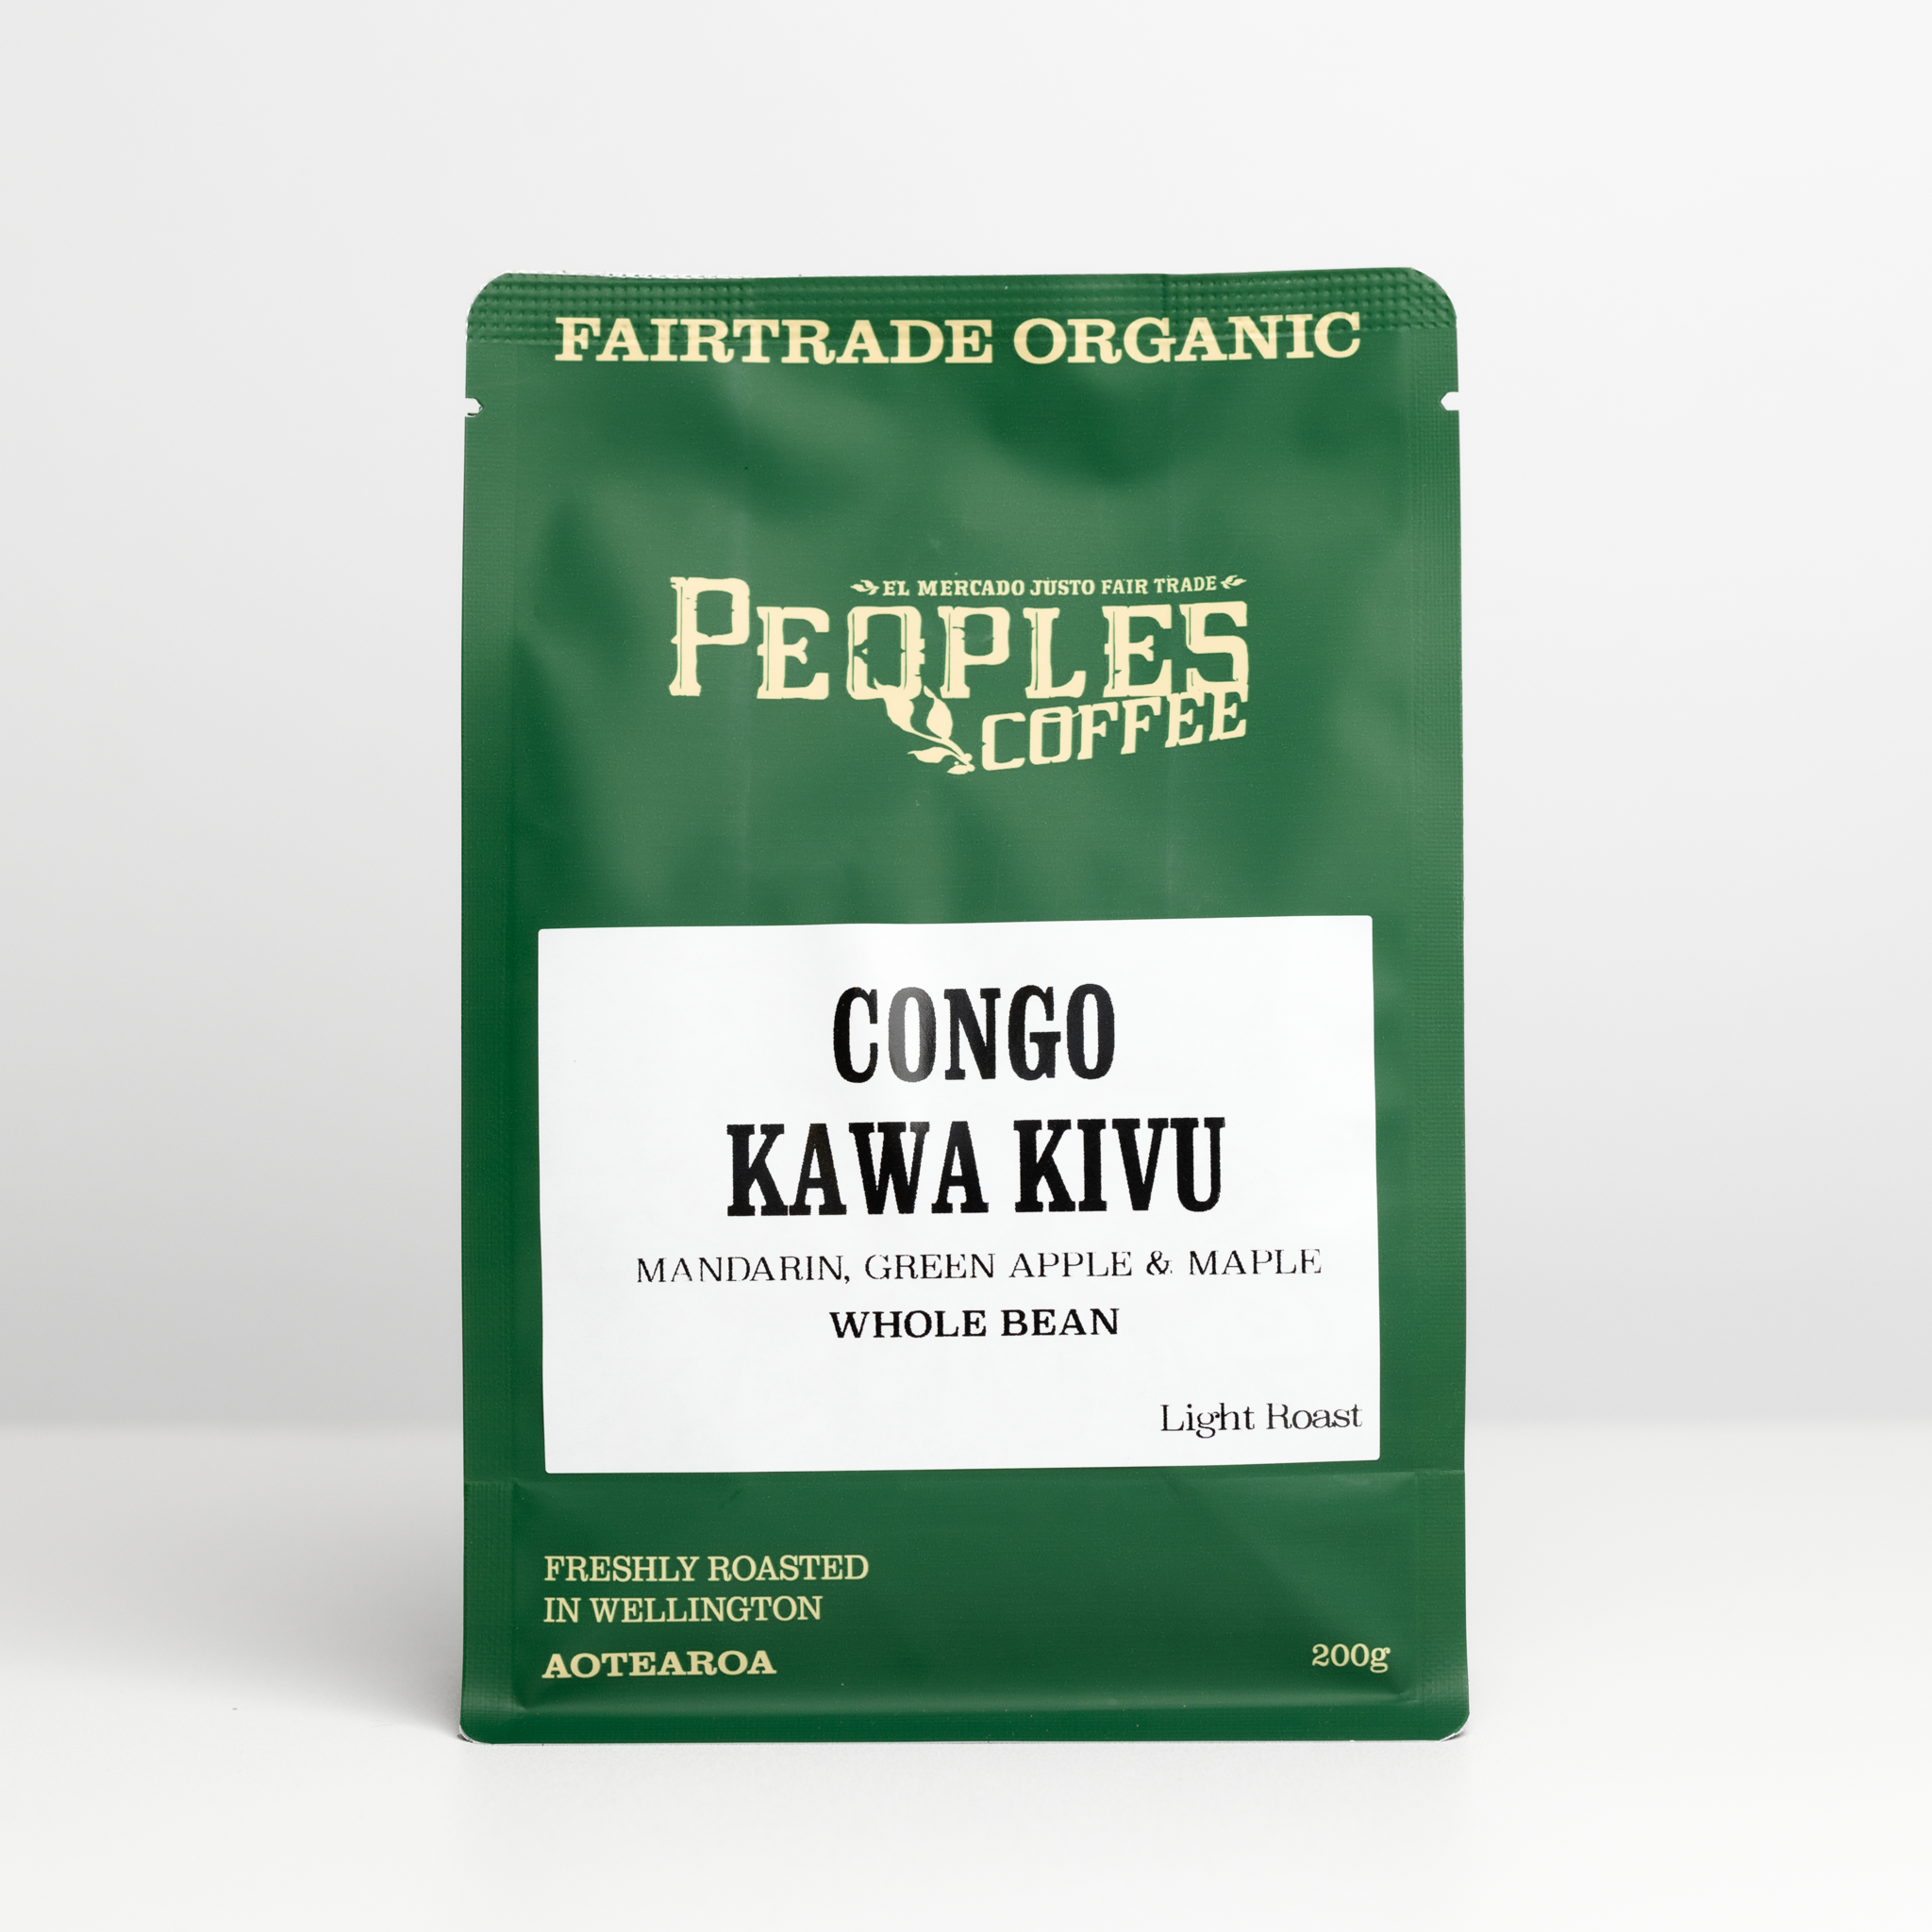 Congo Kawa Kivu